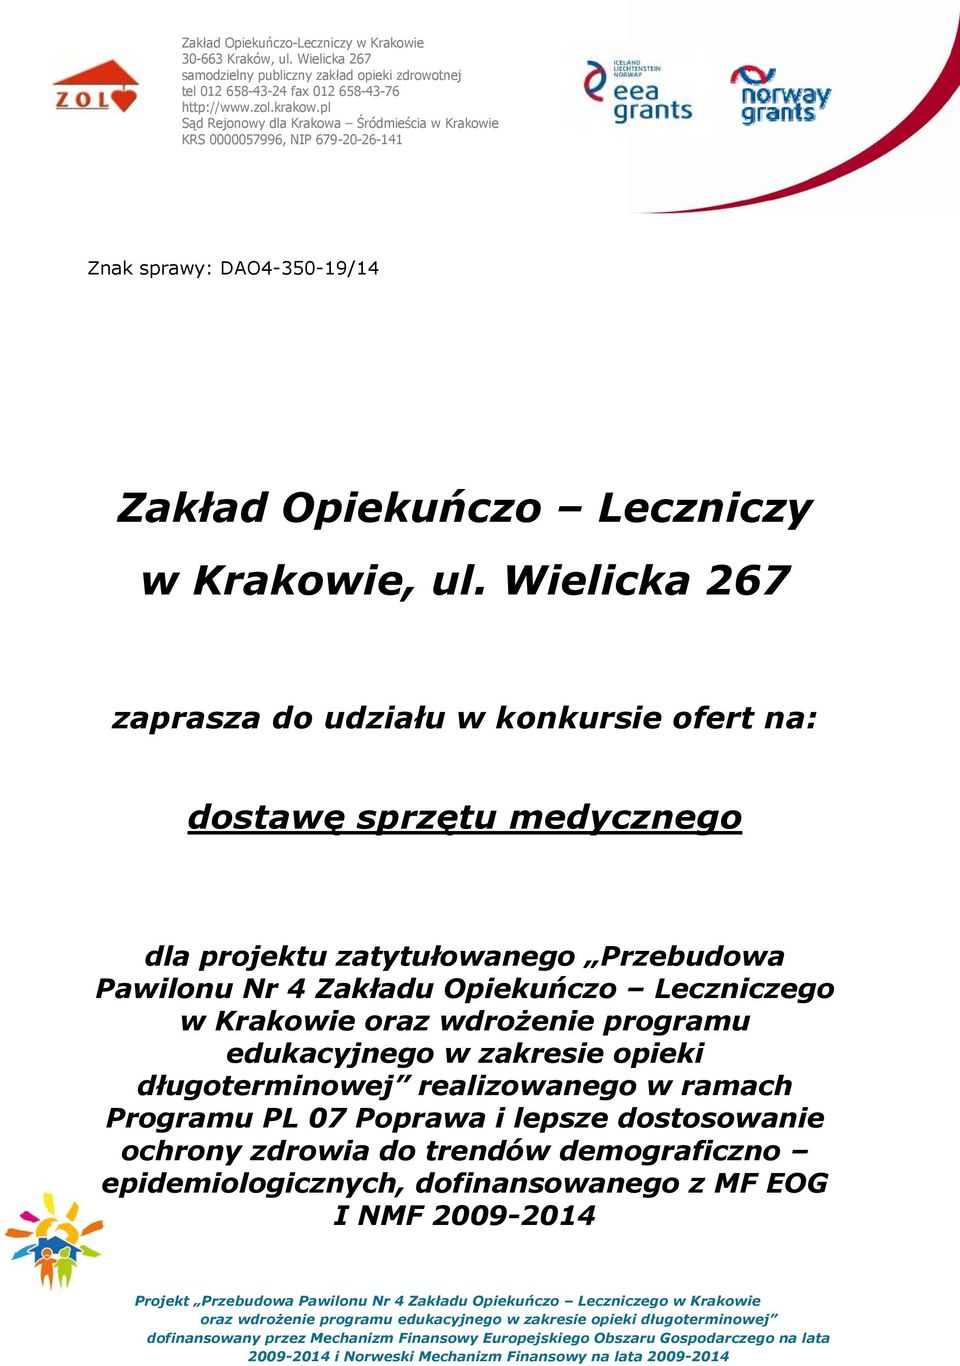 Pawilonu Nr 4 Zakładu Opiekuńczo Leczniczego w Krakowie oraz wdrożenie programu edukacyjnego w zakresie opieki